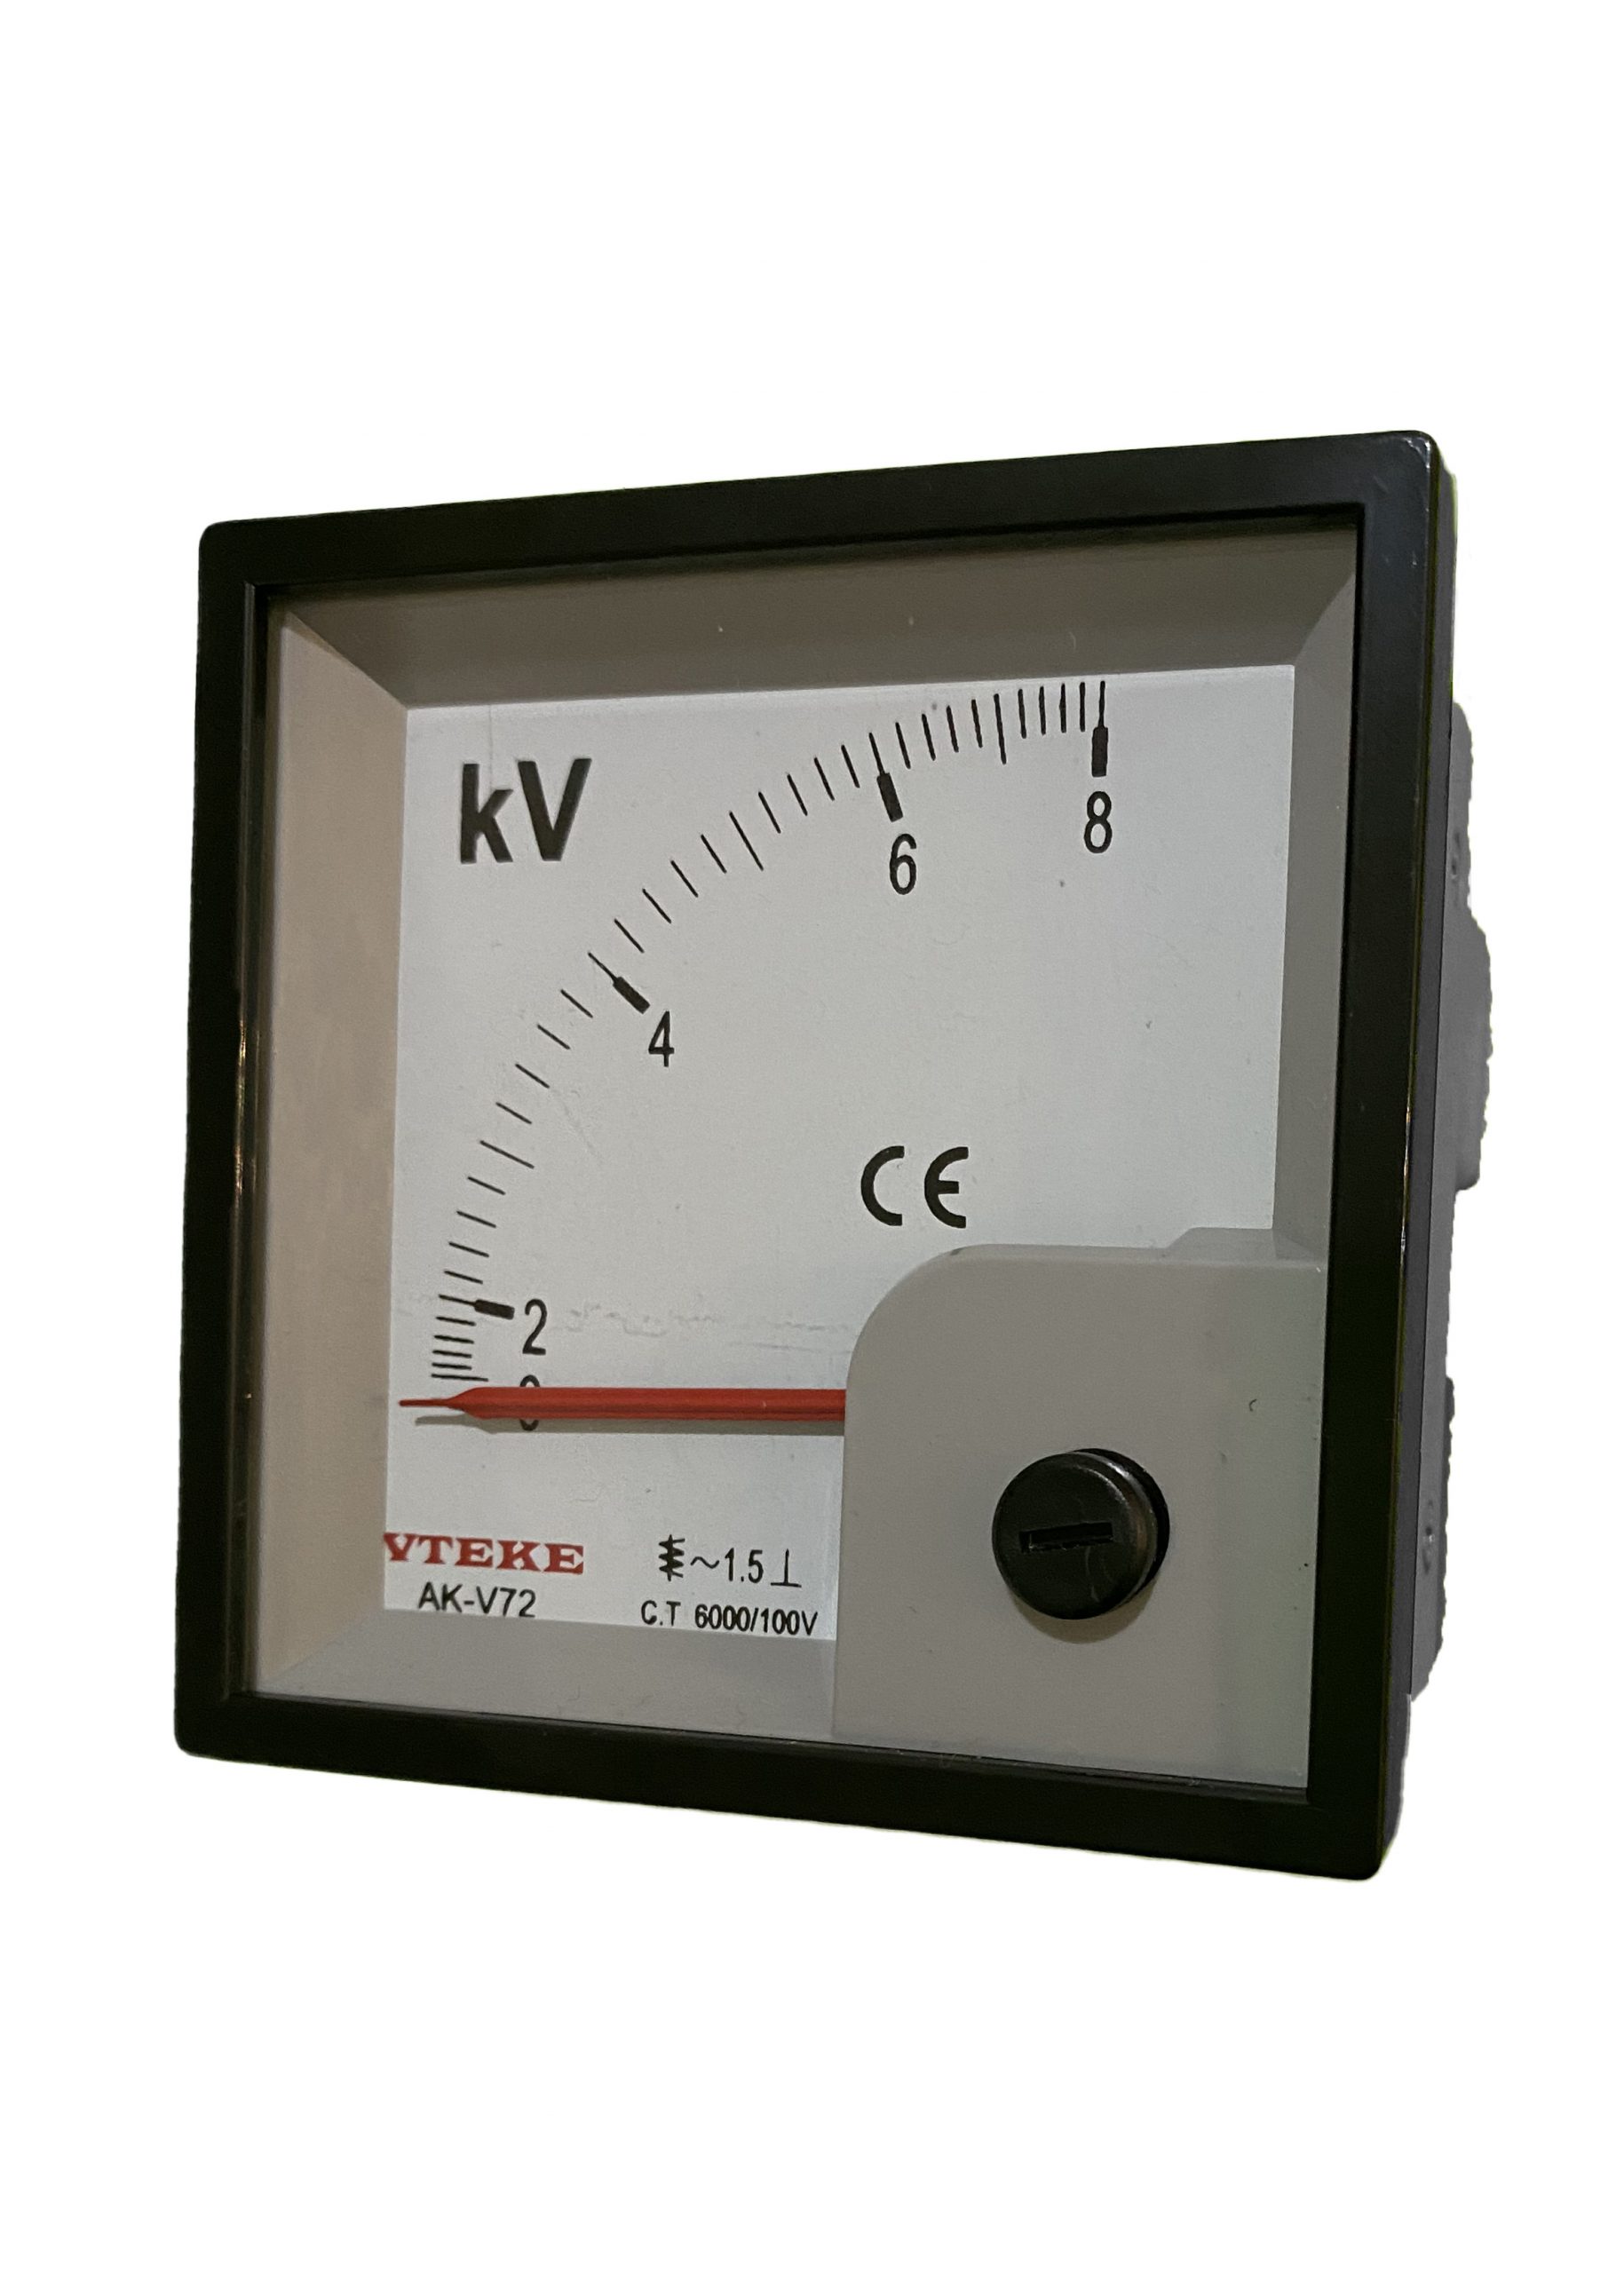 MV (kV) Analog Voltmeter 96 X 96 (PT Required) - VTEKE Electrical